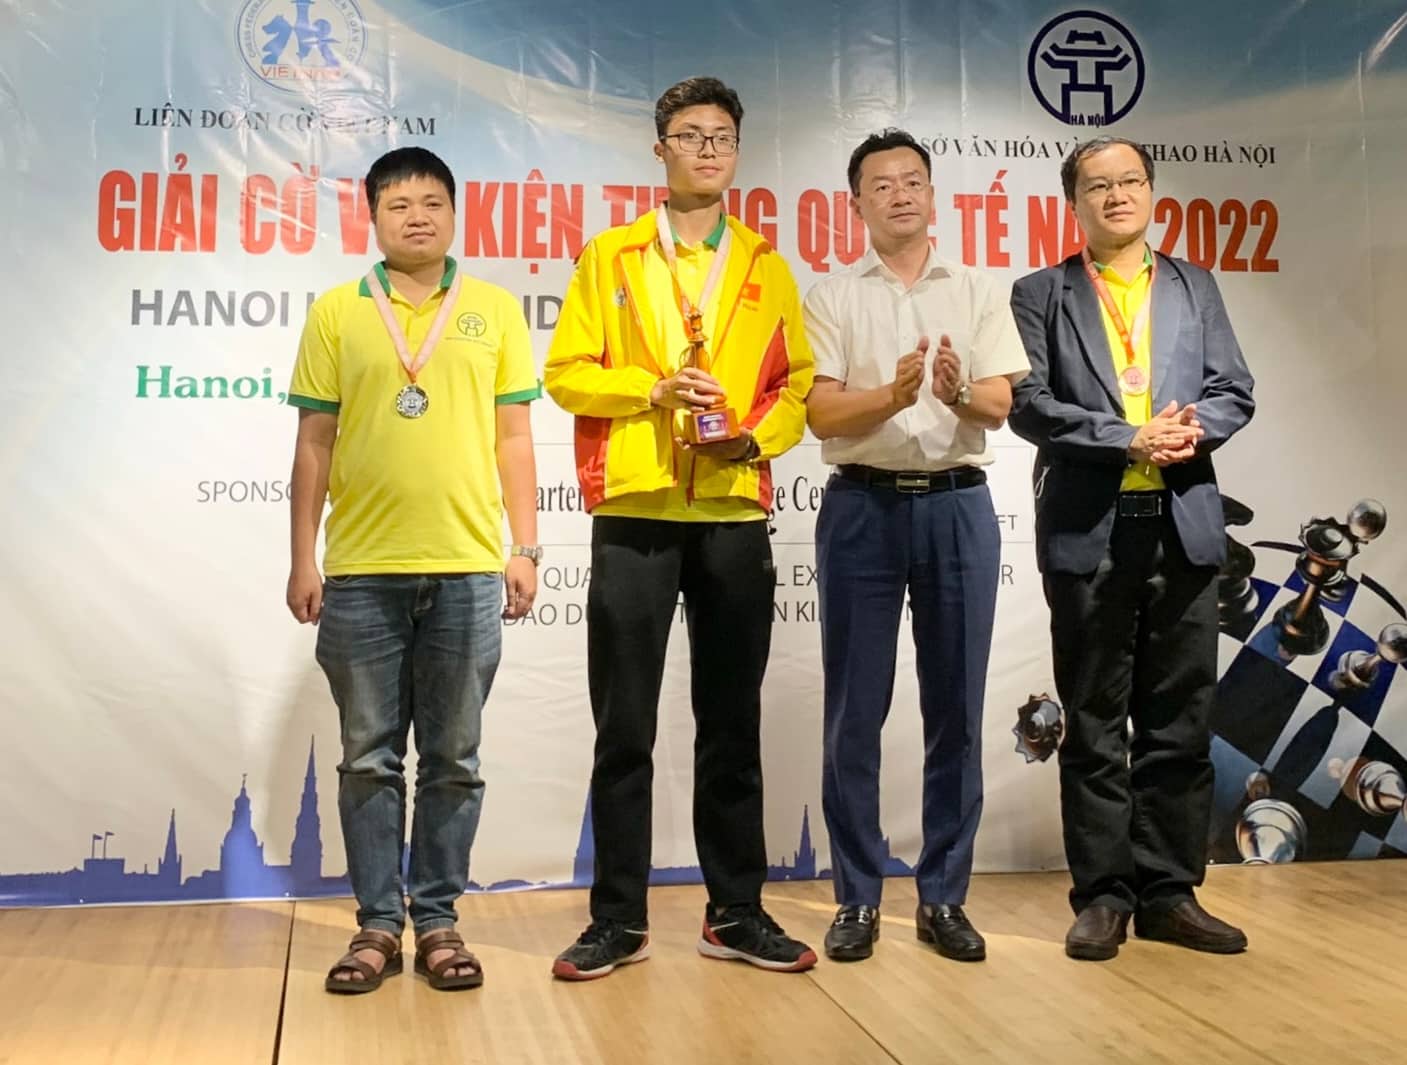 Kỳ thủ Việt Nam gặt hái danh hiệu, hệ số elo tại các giải cờ vua quốc tế tại Hà Nội  - Ảnh 1.